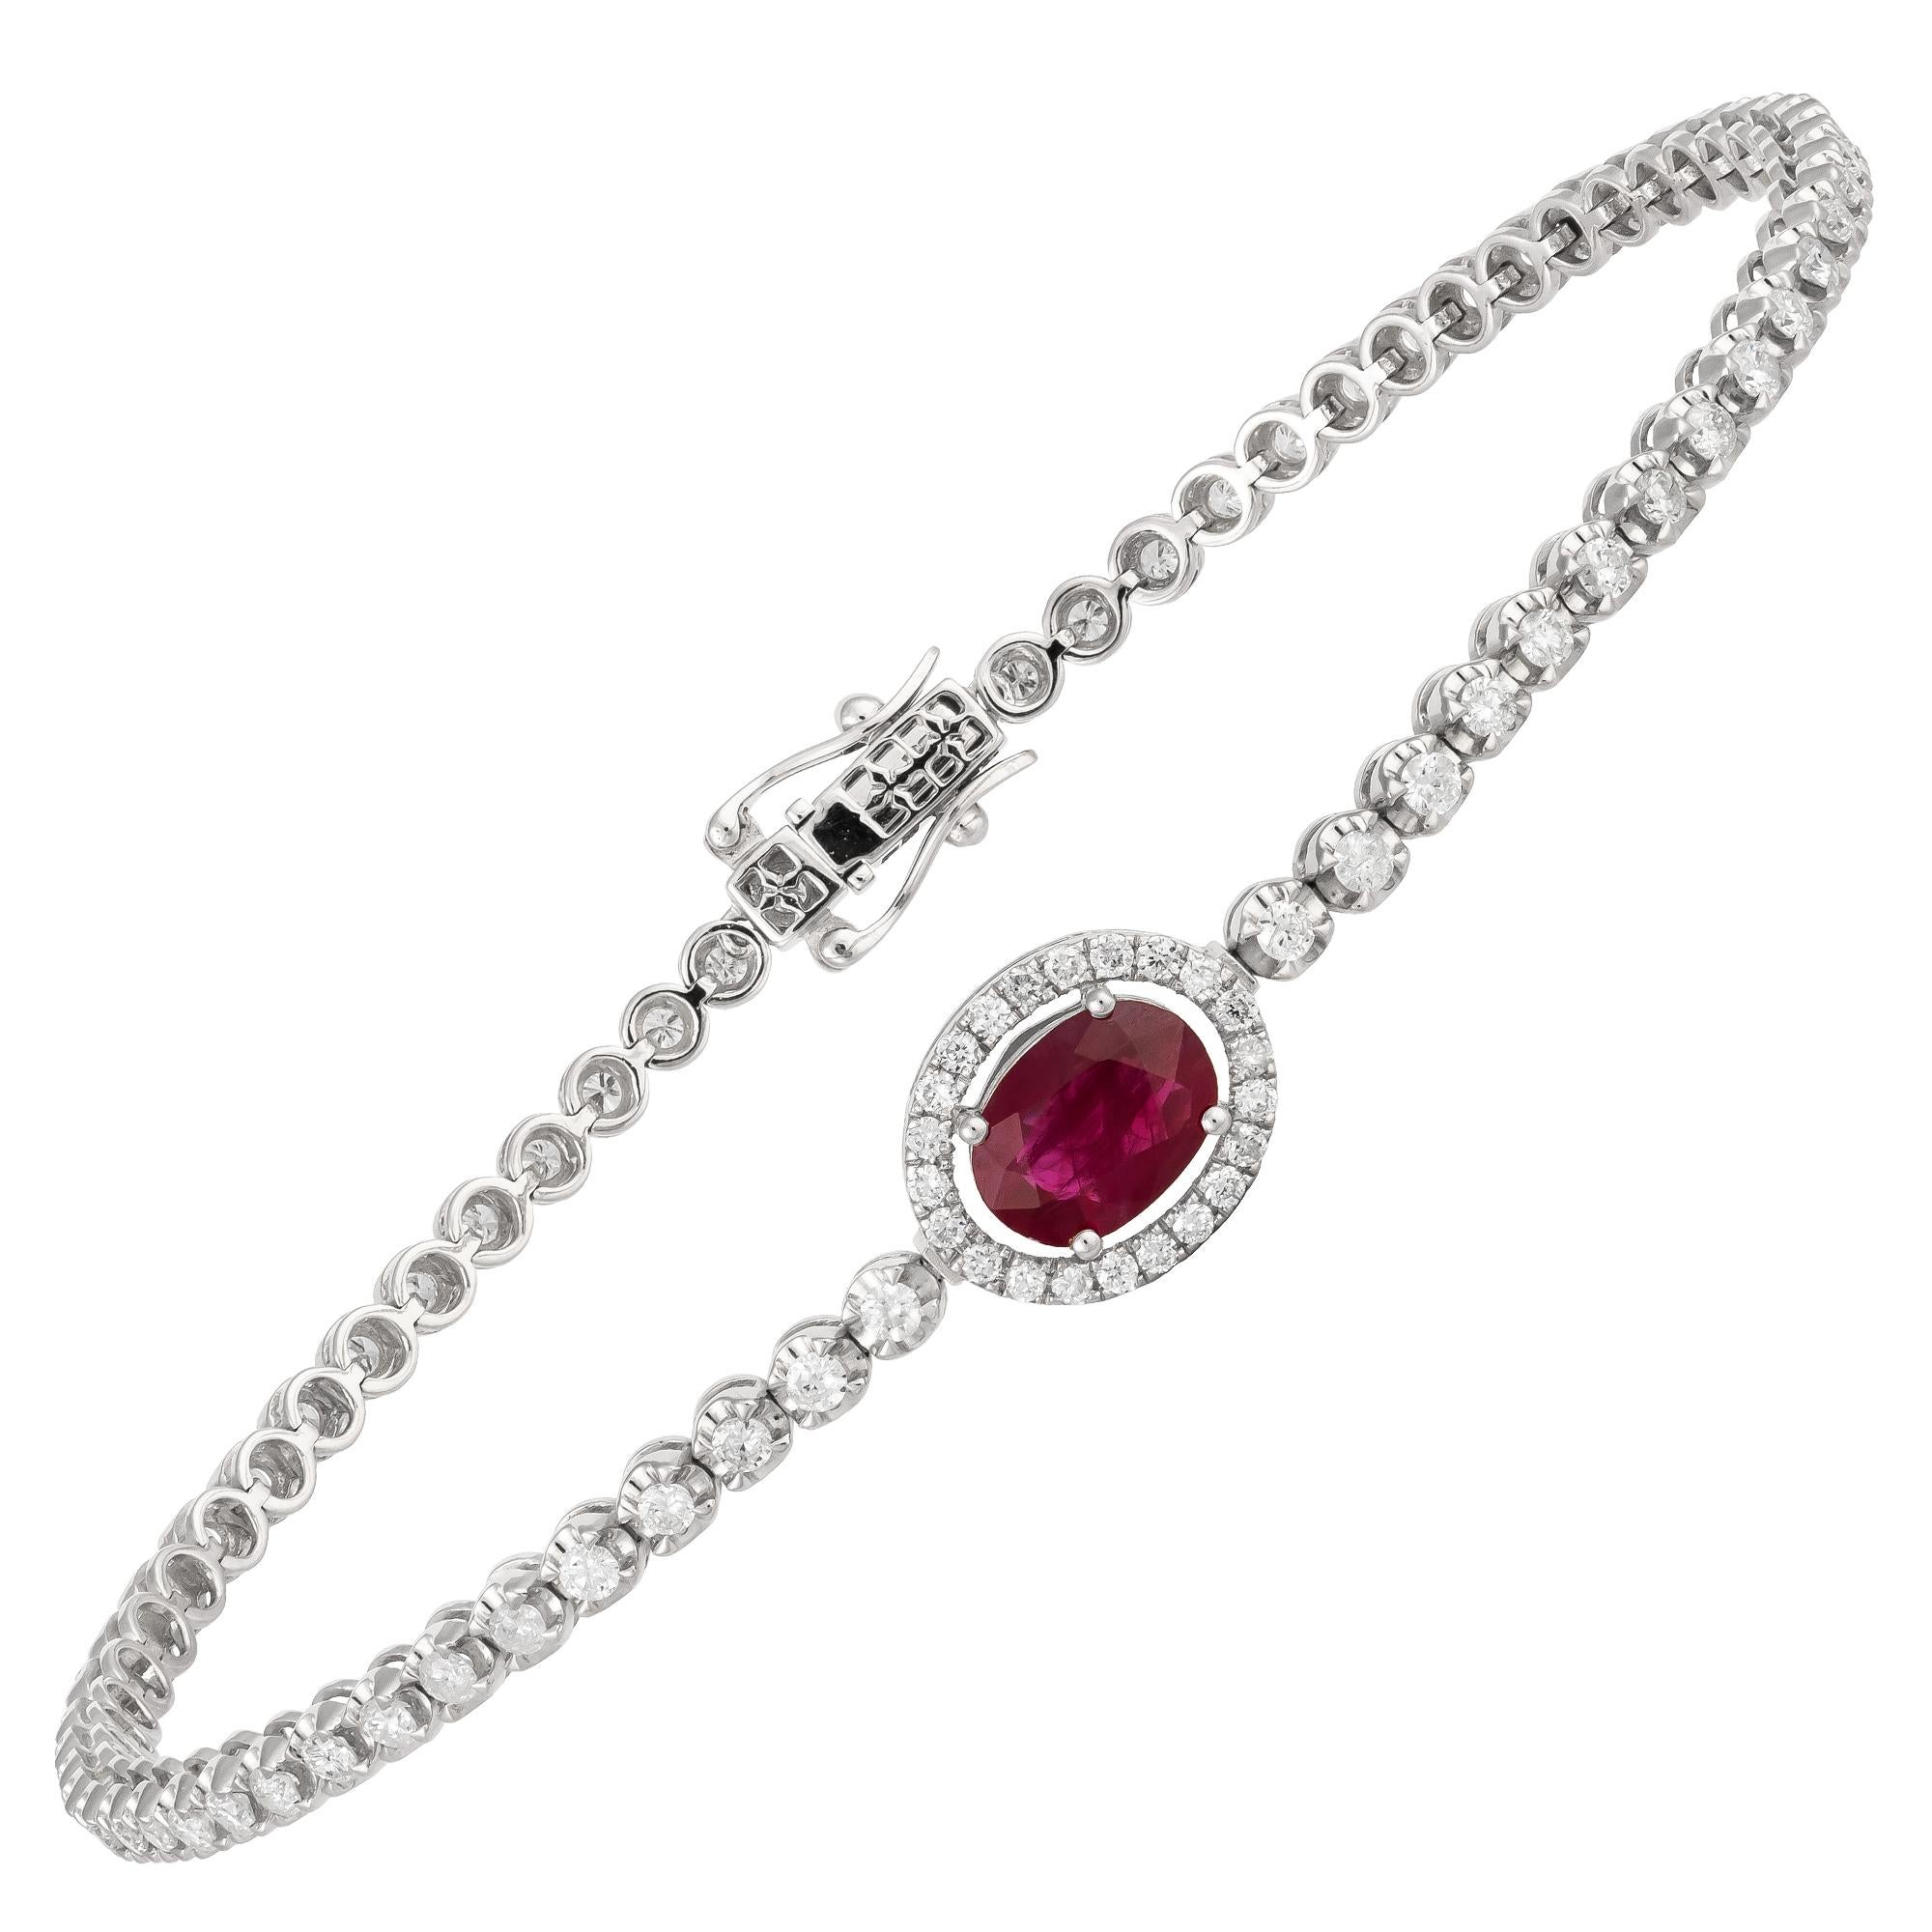 Modern Unique White Gold 18K Ruby Bracelet Diamond for Her For Sale